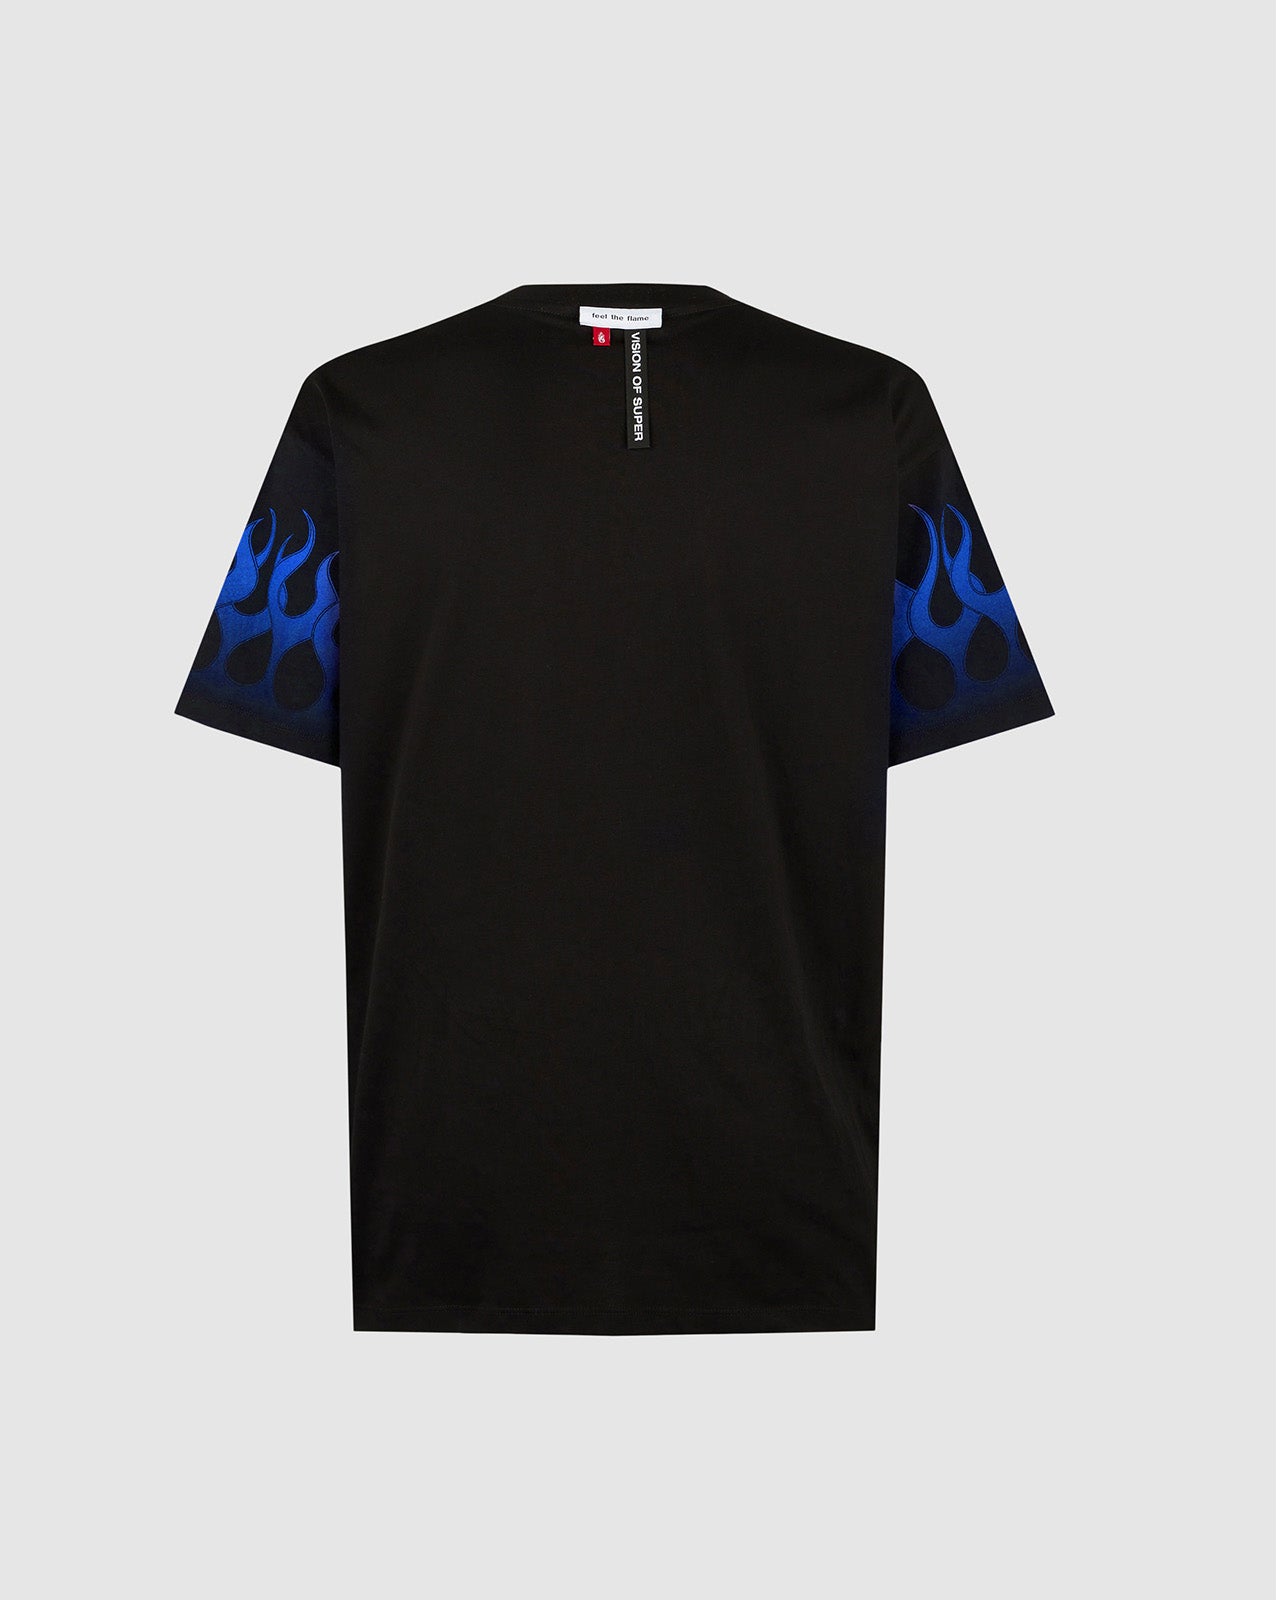 T-shirt Nera con Fiamme Blu